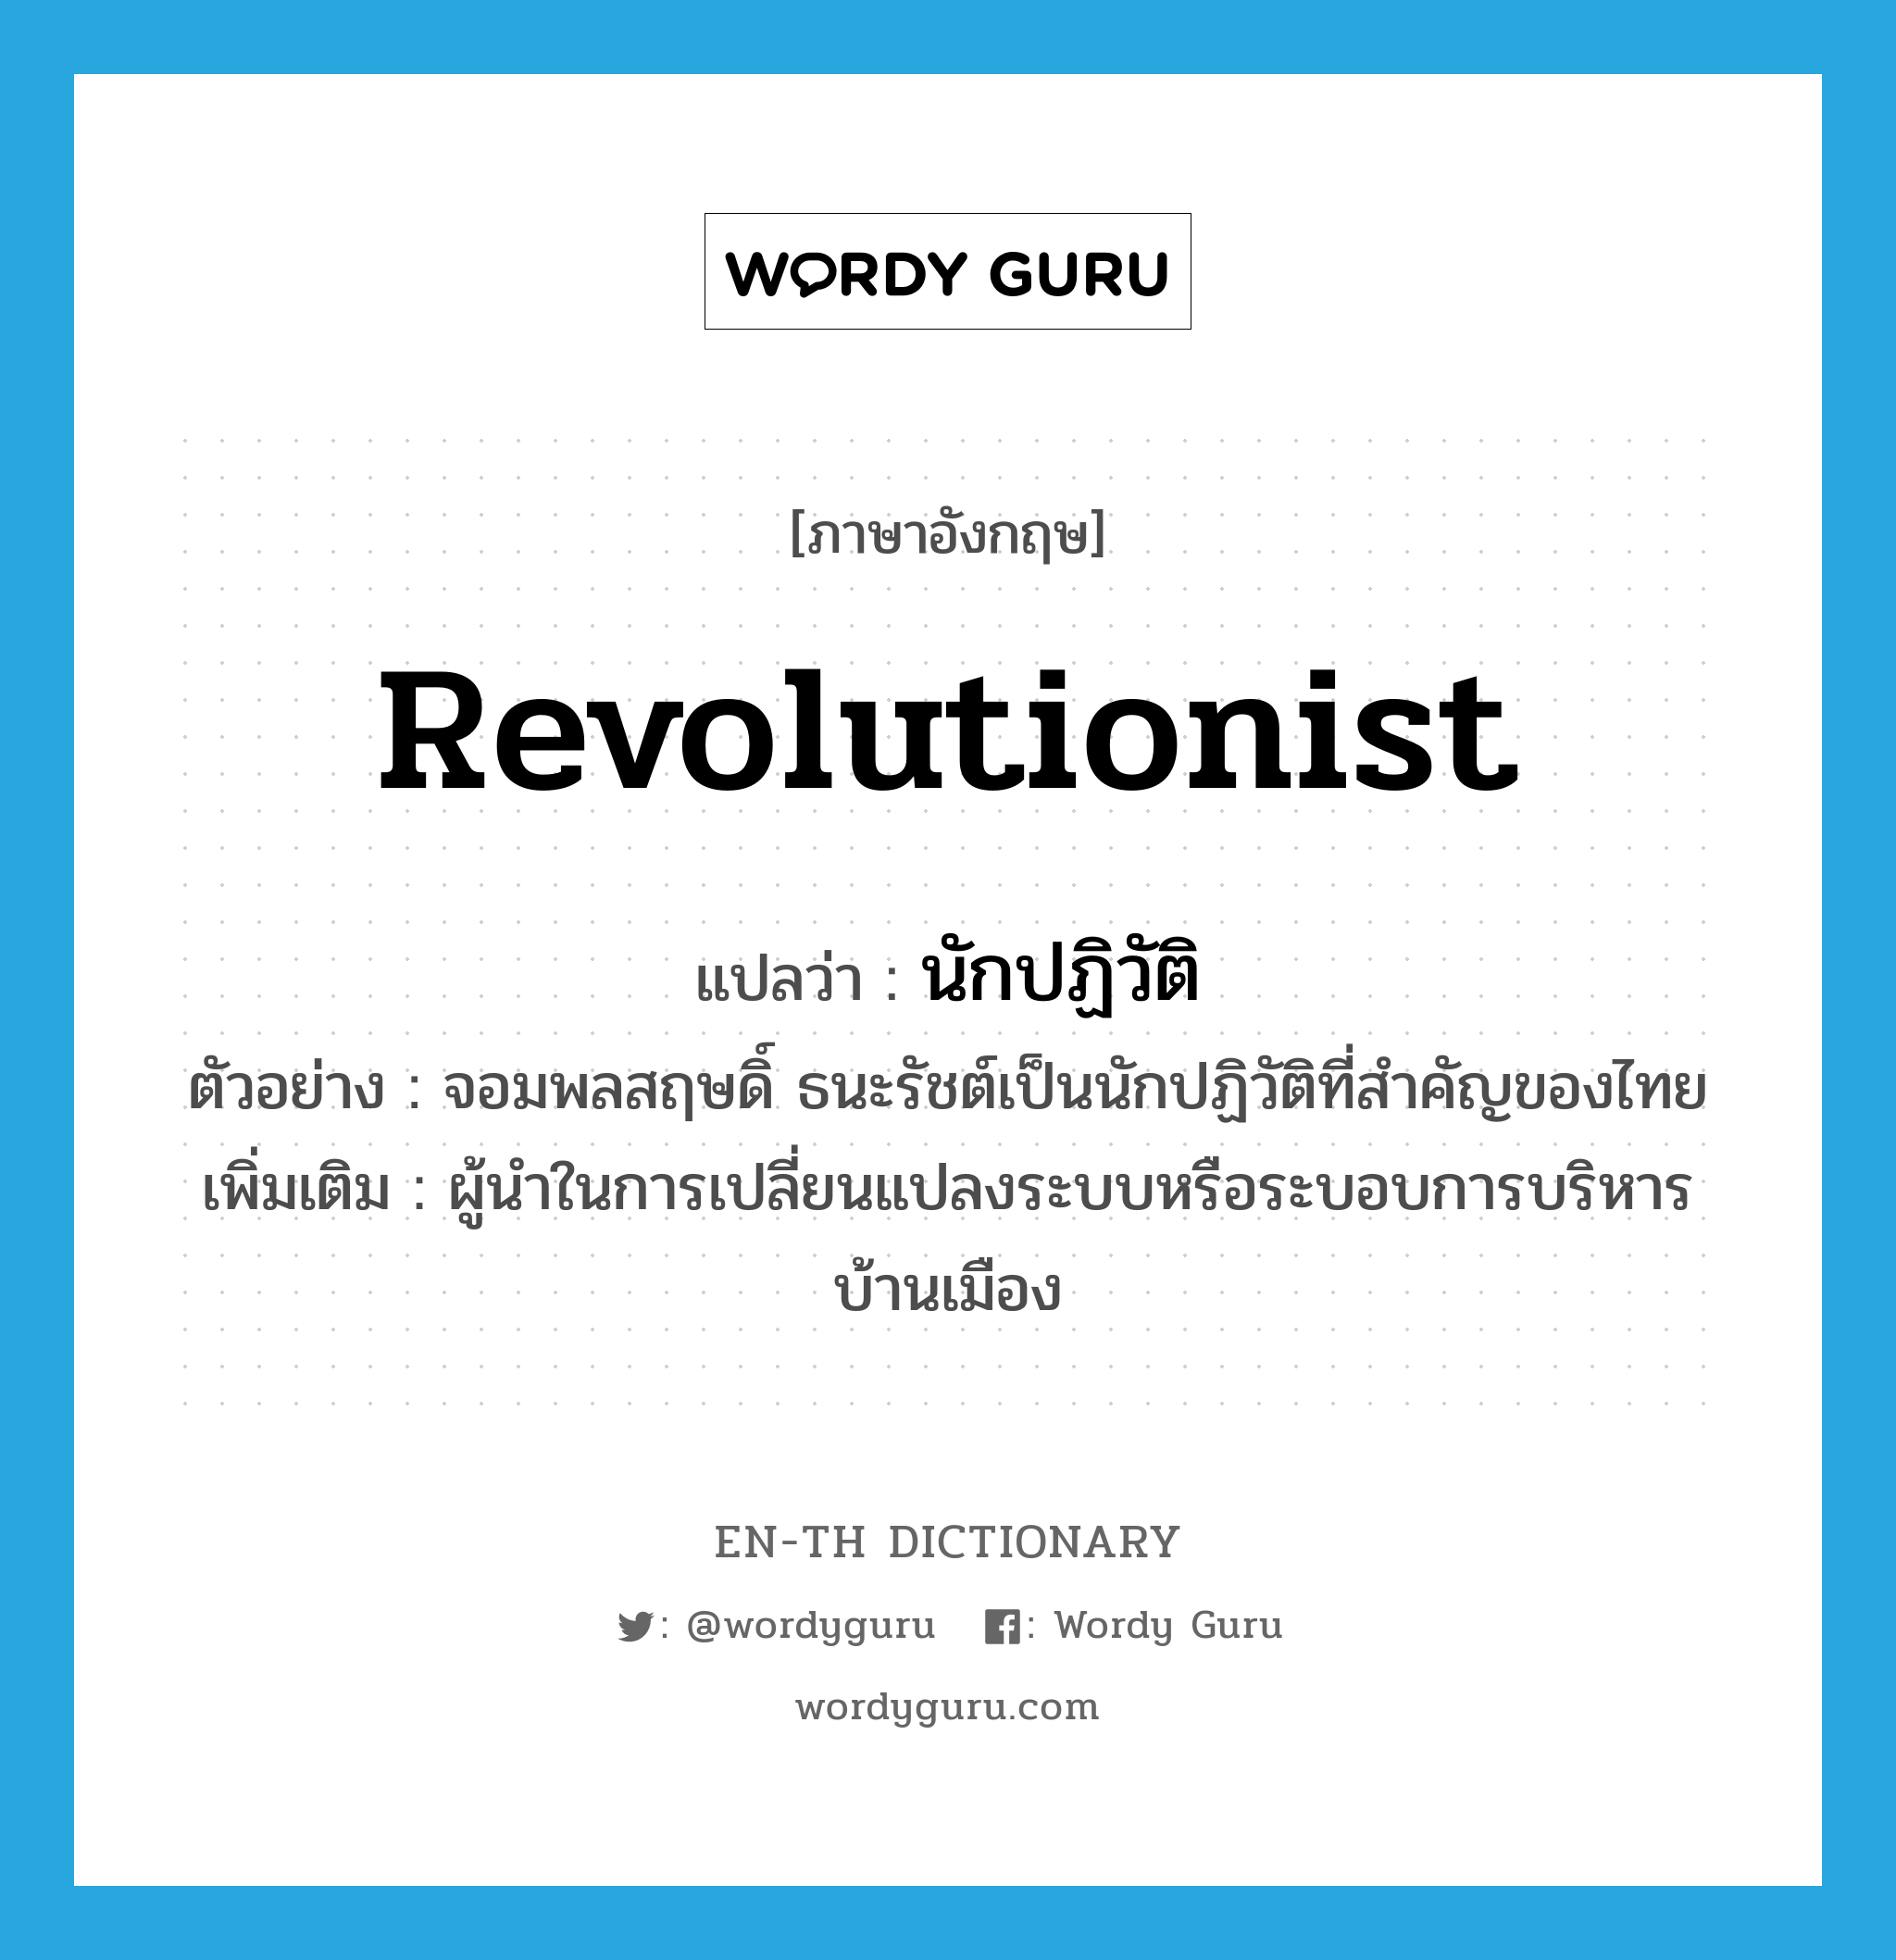 นักปฏิวัติ ภาษาอังกฤษ?, คำศัพท์ภาษาอังกฤษ นักปฏิวัติ แปลว่า revolutionist ประเภท N ตัวอย่าง จอมพลสฤษดิ์ ธนะรัชต์เป็นนักปฏิวัติที่สำคัญของไทย เพิ่มเติม ผู้นำในการเปลี่ยนแปลงระบบหรือระบอบการบริหารบ้านเมือง หมวด N